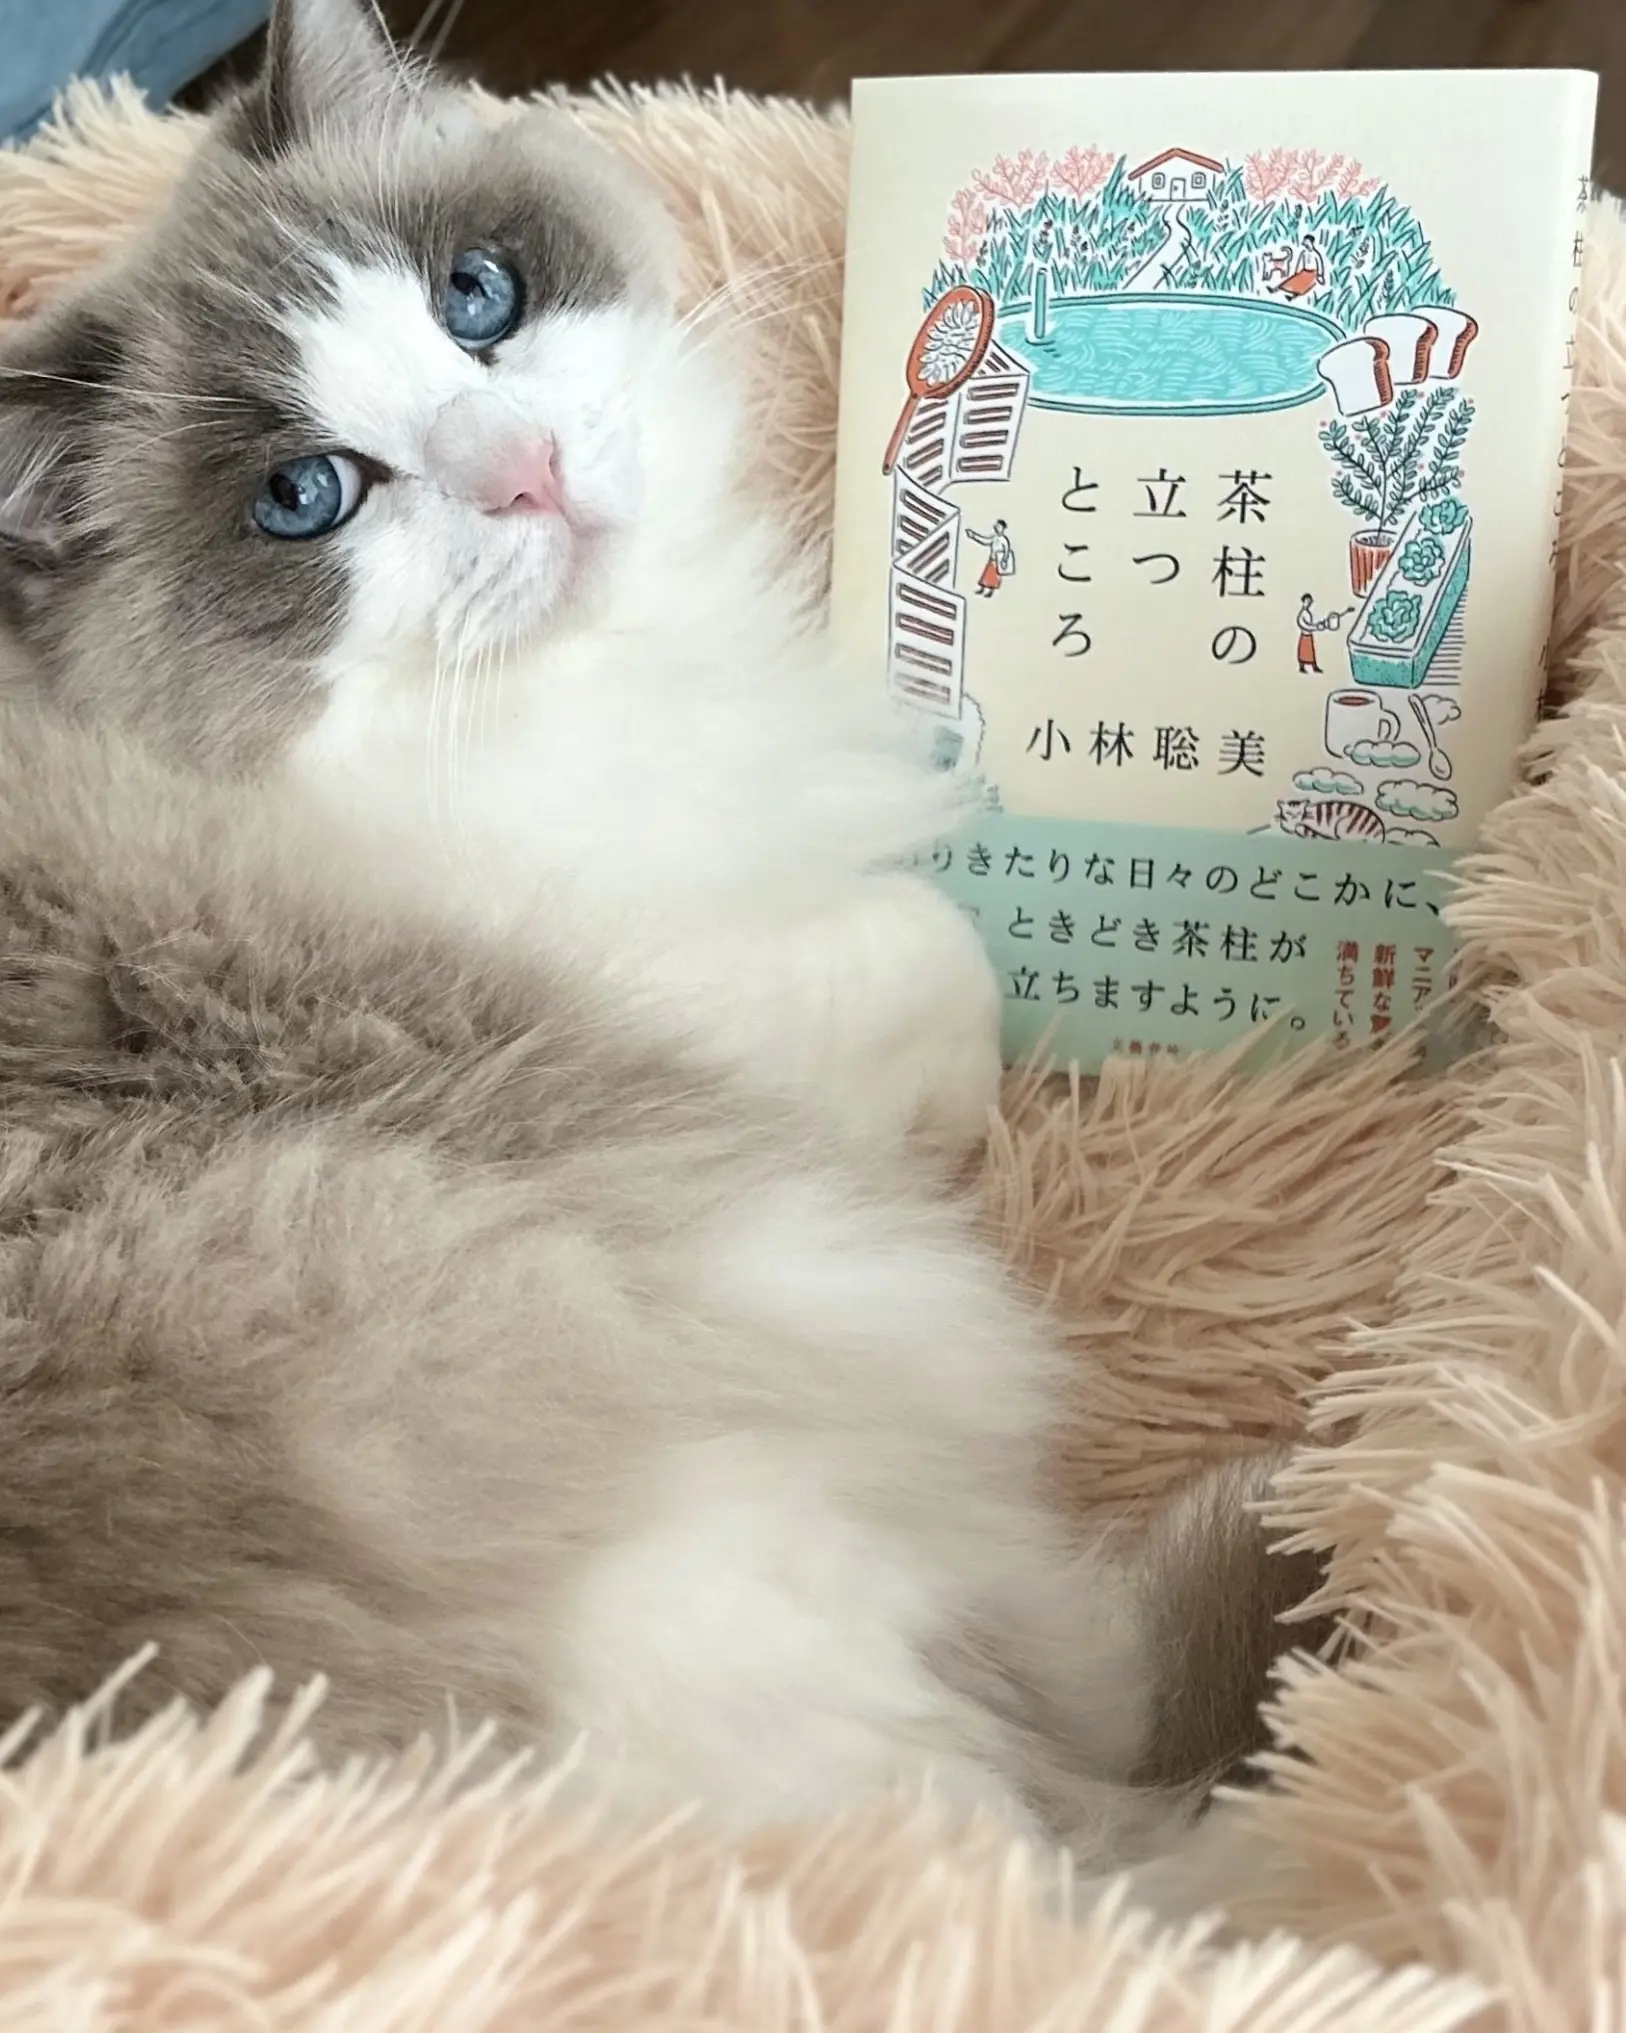 『茶柱の立つところ』小林聡美さんエッセイ本と猫